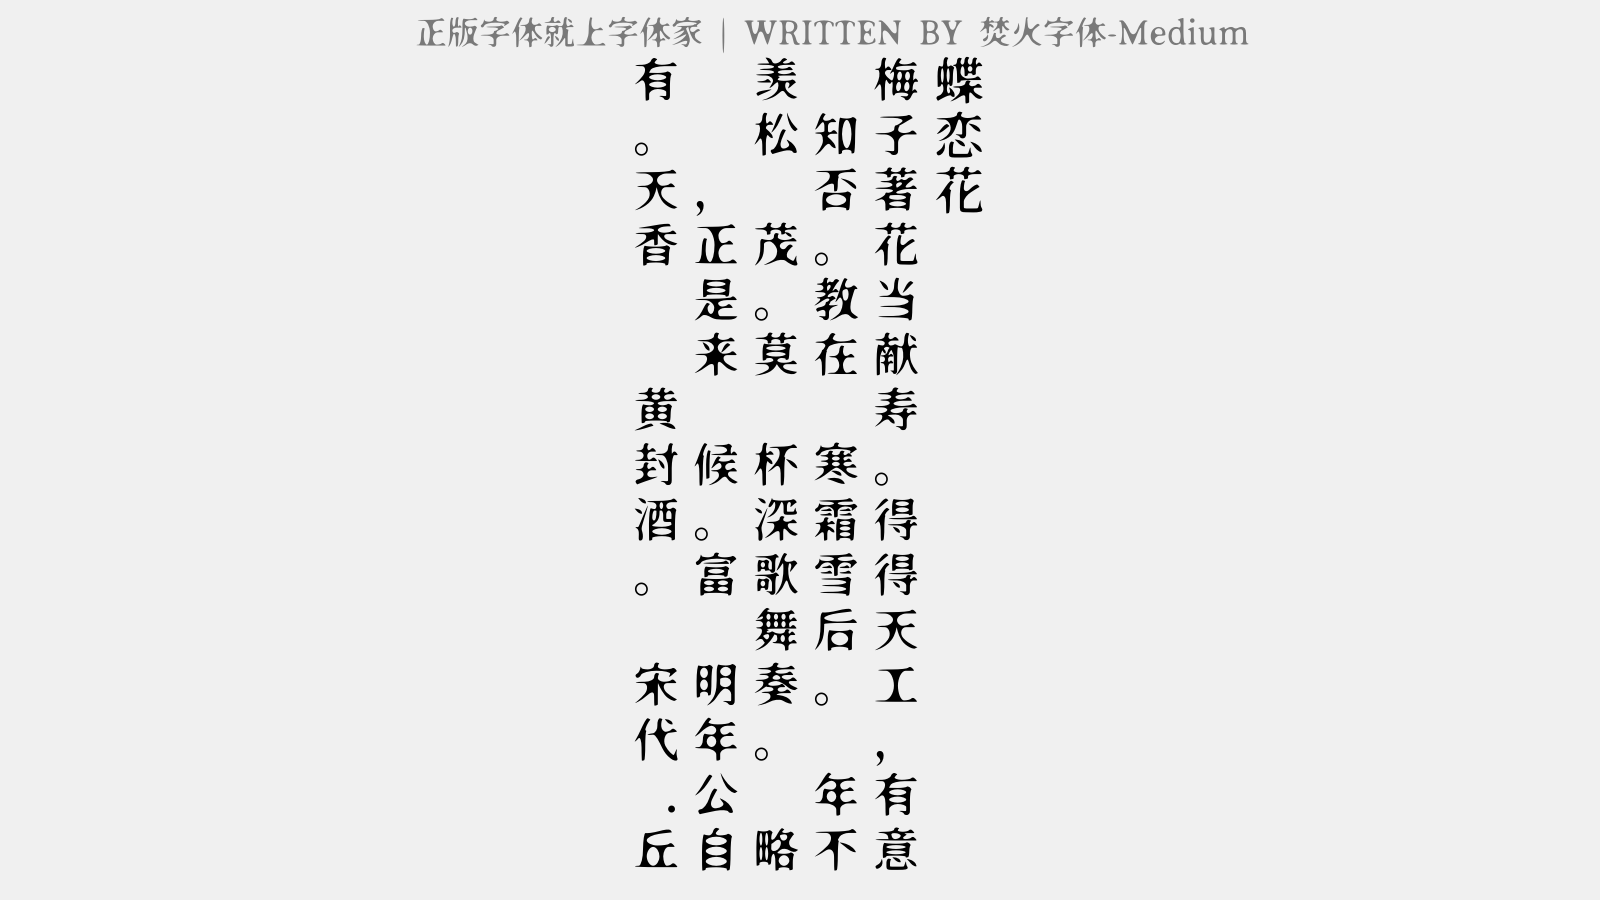 焚火字体-Medium - 蝶恋花（为钱守寿）